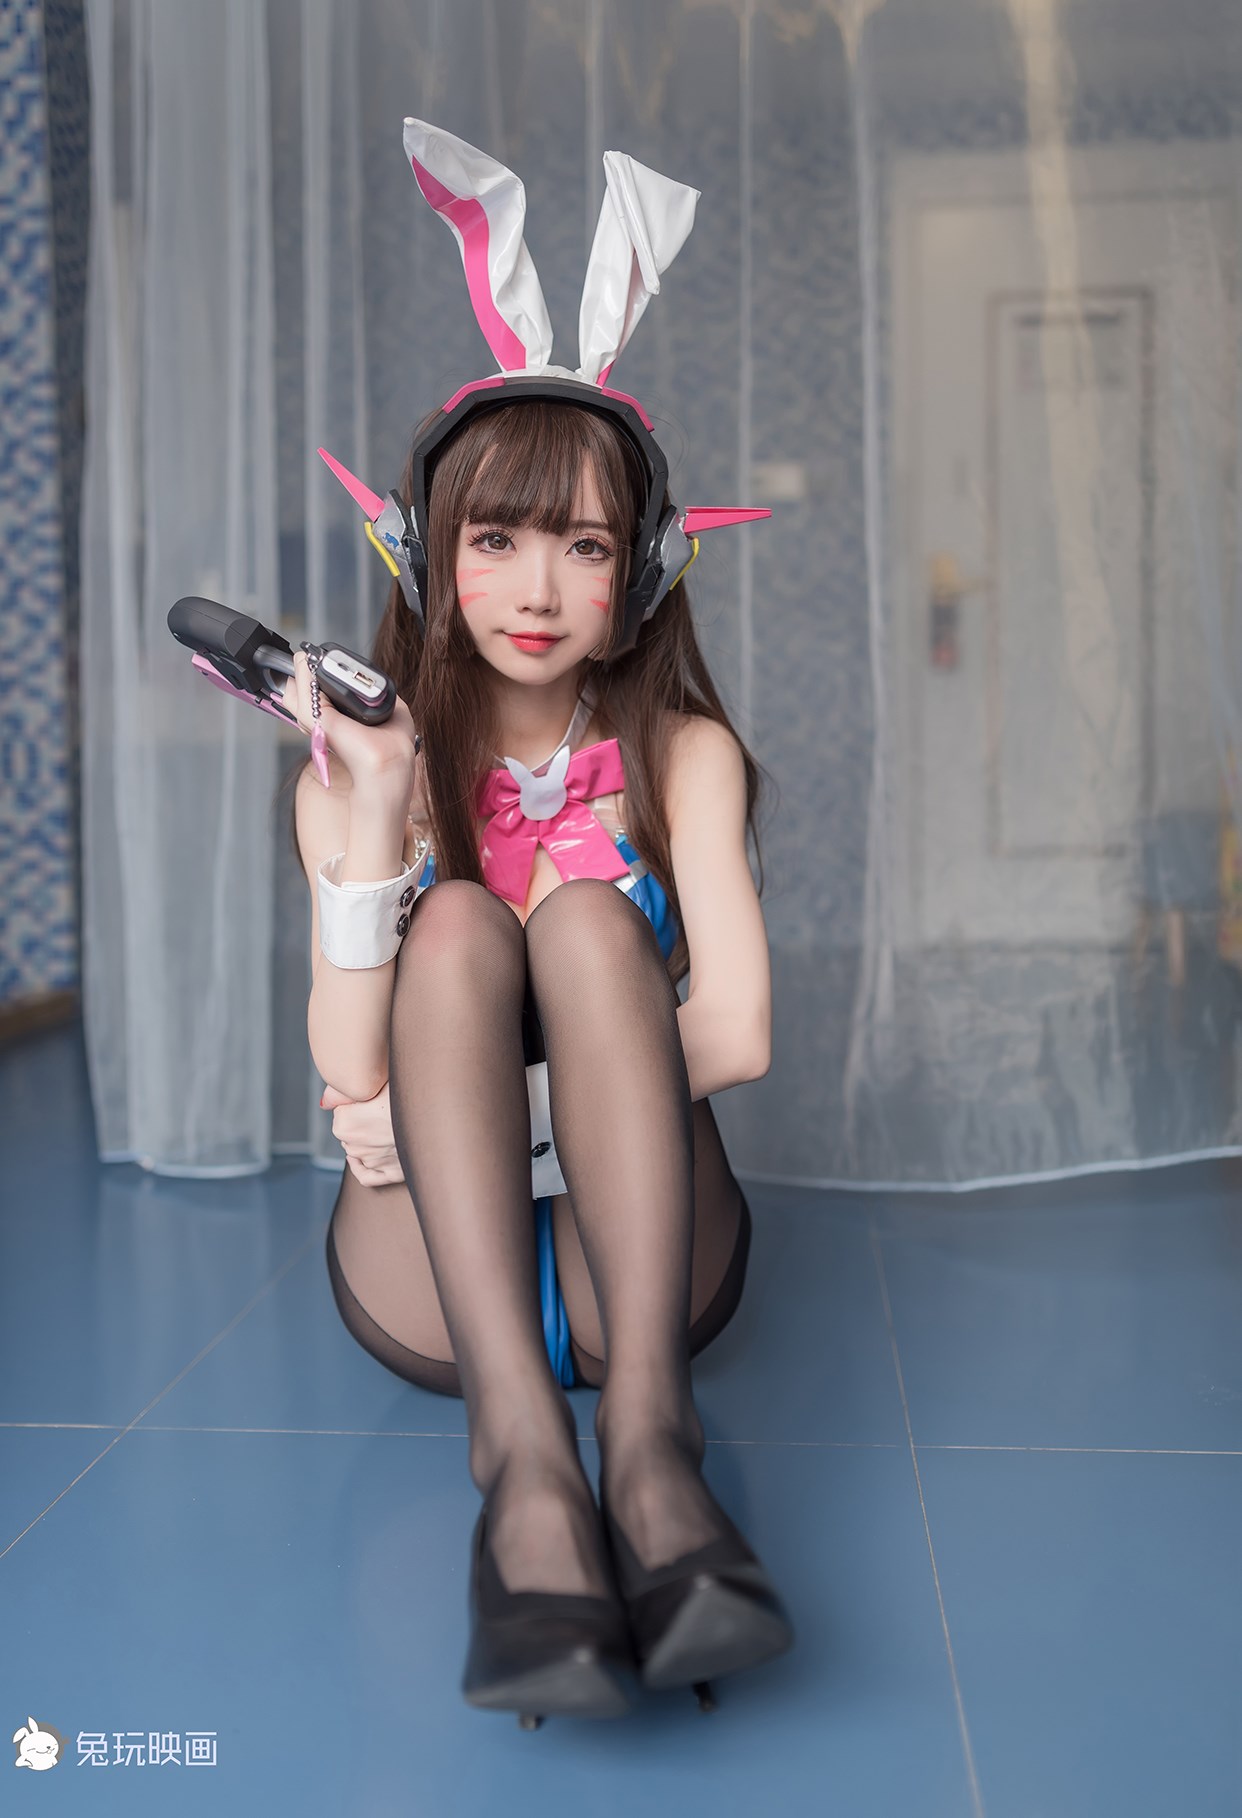 【兔玩映画】兔女郎vol.o9 - D·VA 兔玩映画 第53张